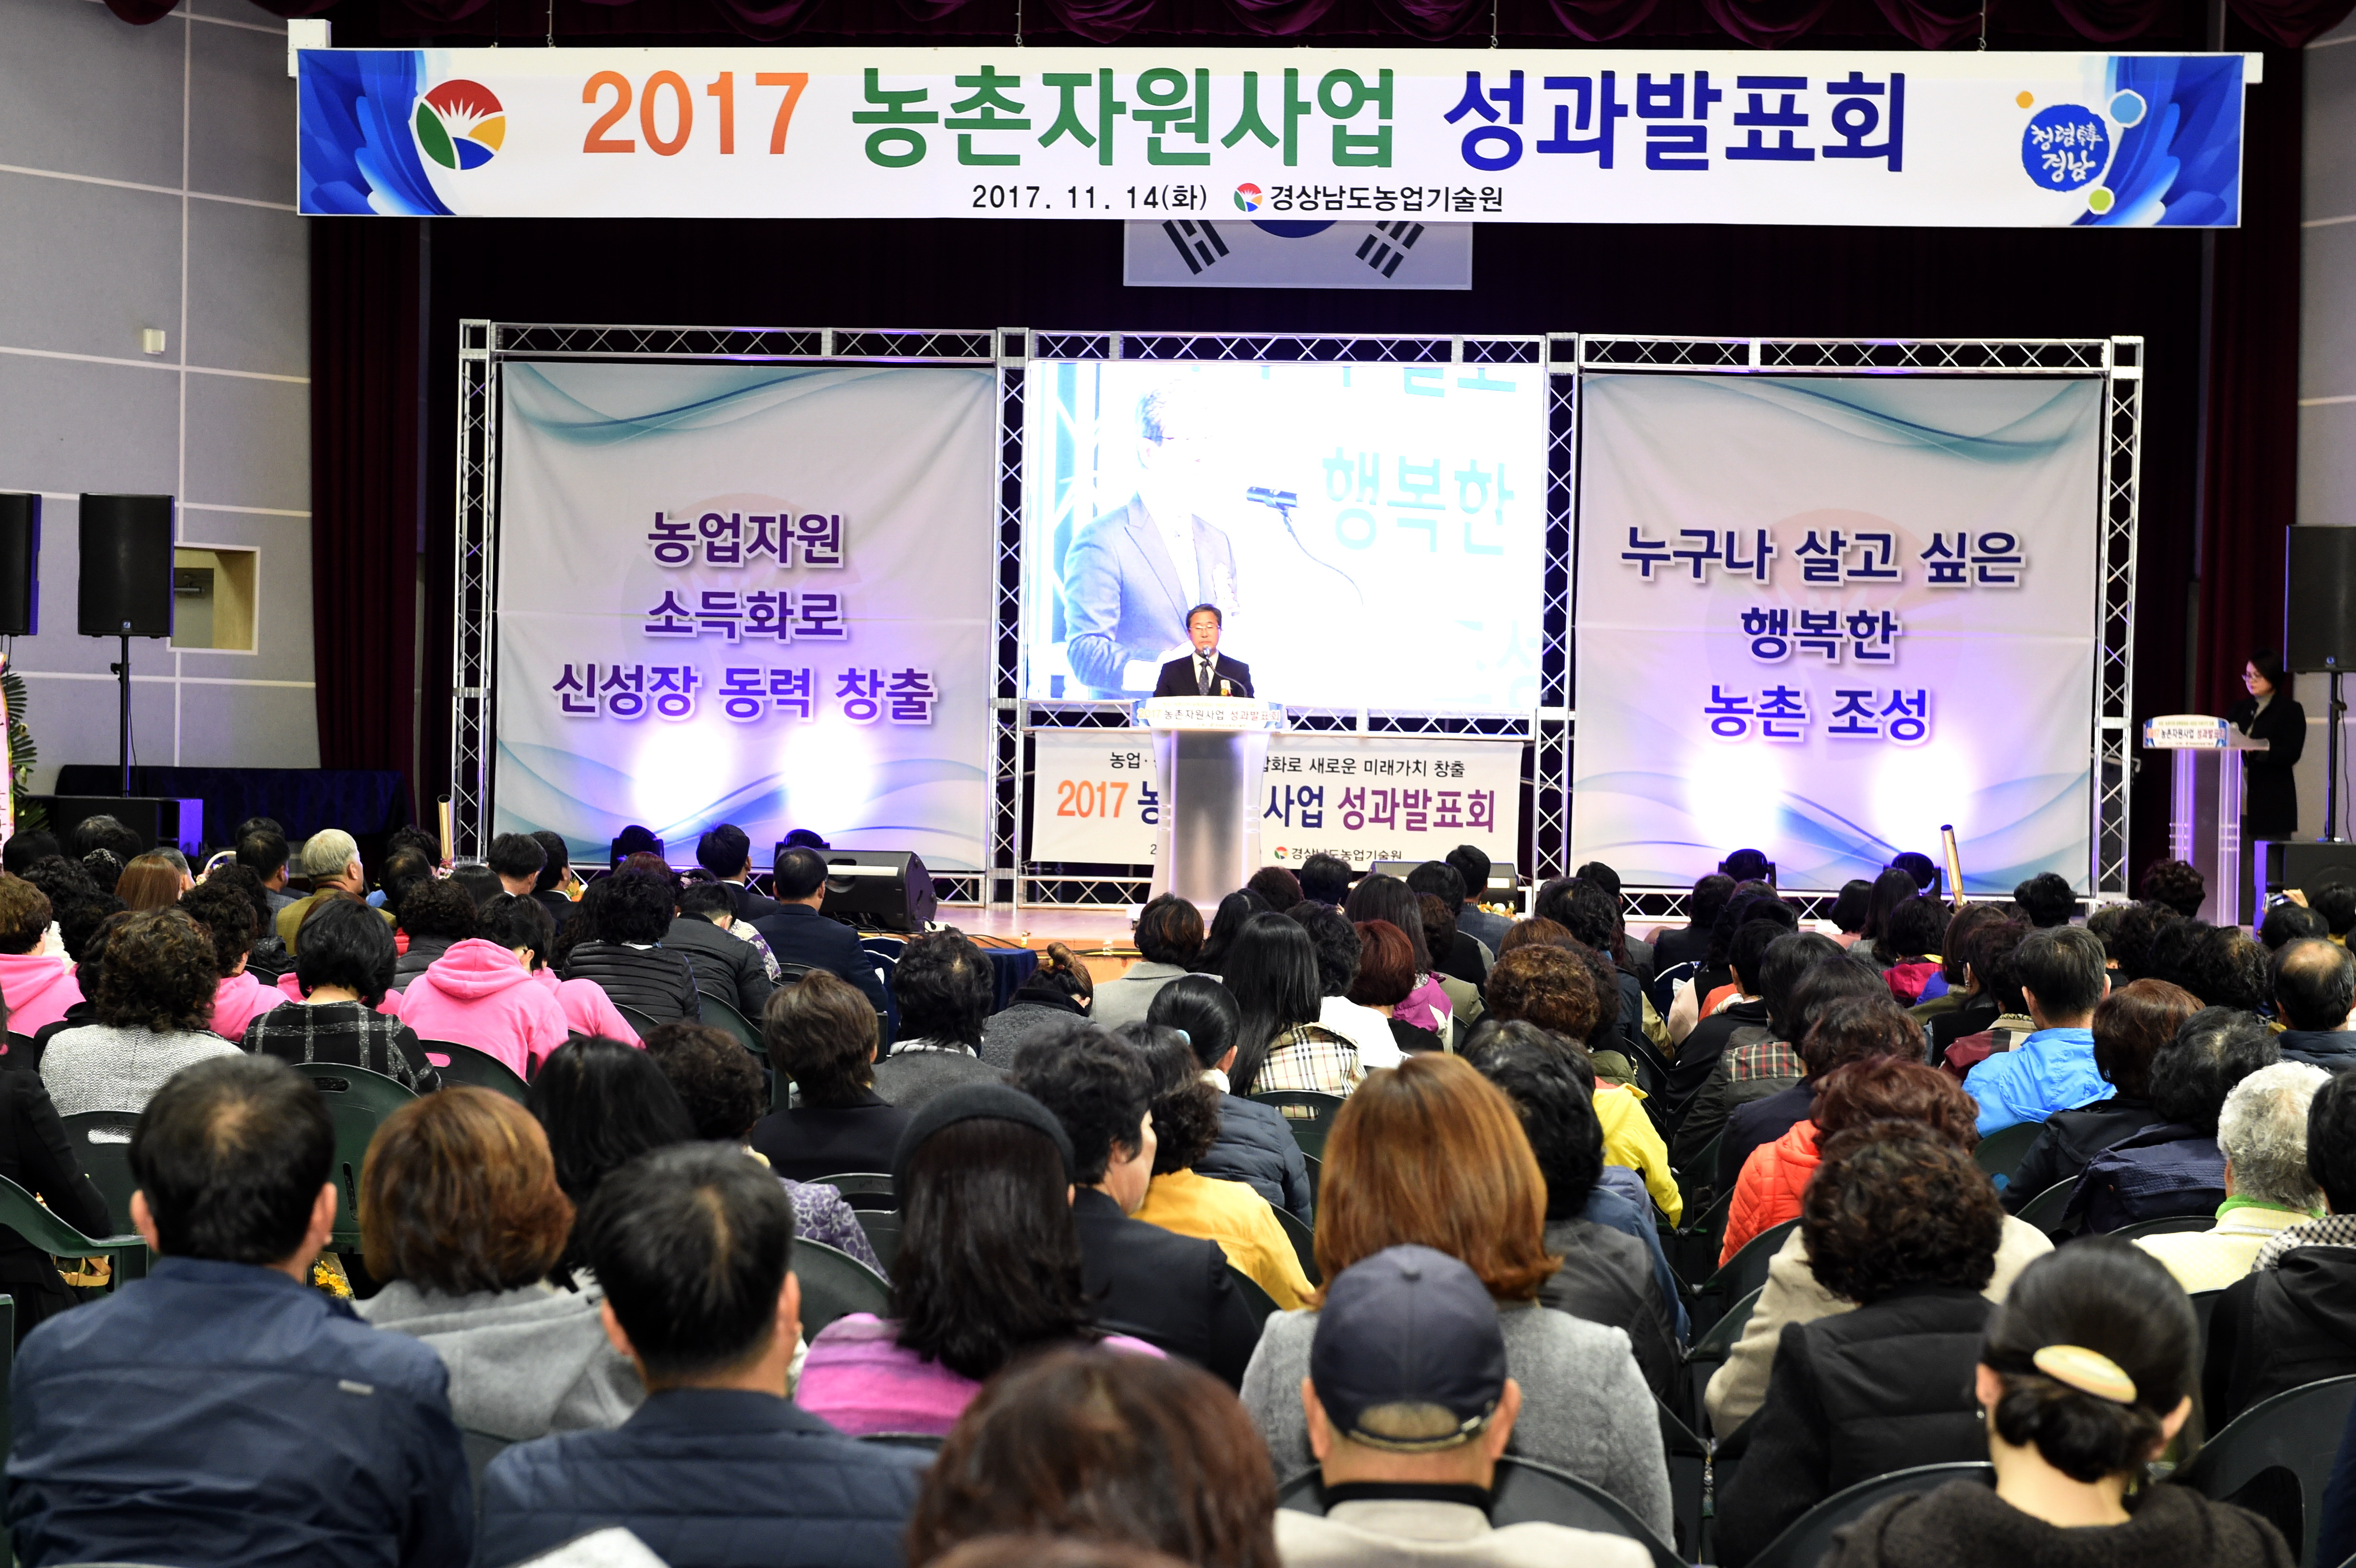 11.14.(화)2017 농촌자원사업 성과발표회 성료 (1)1.jpg